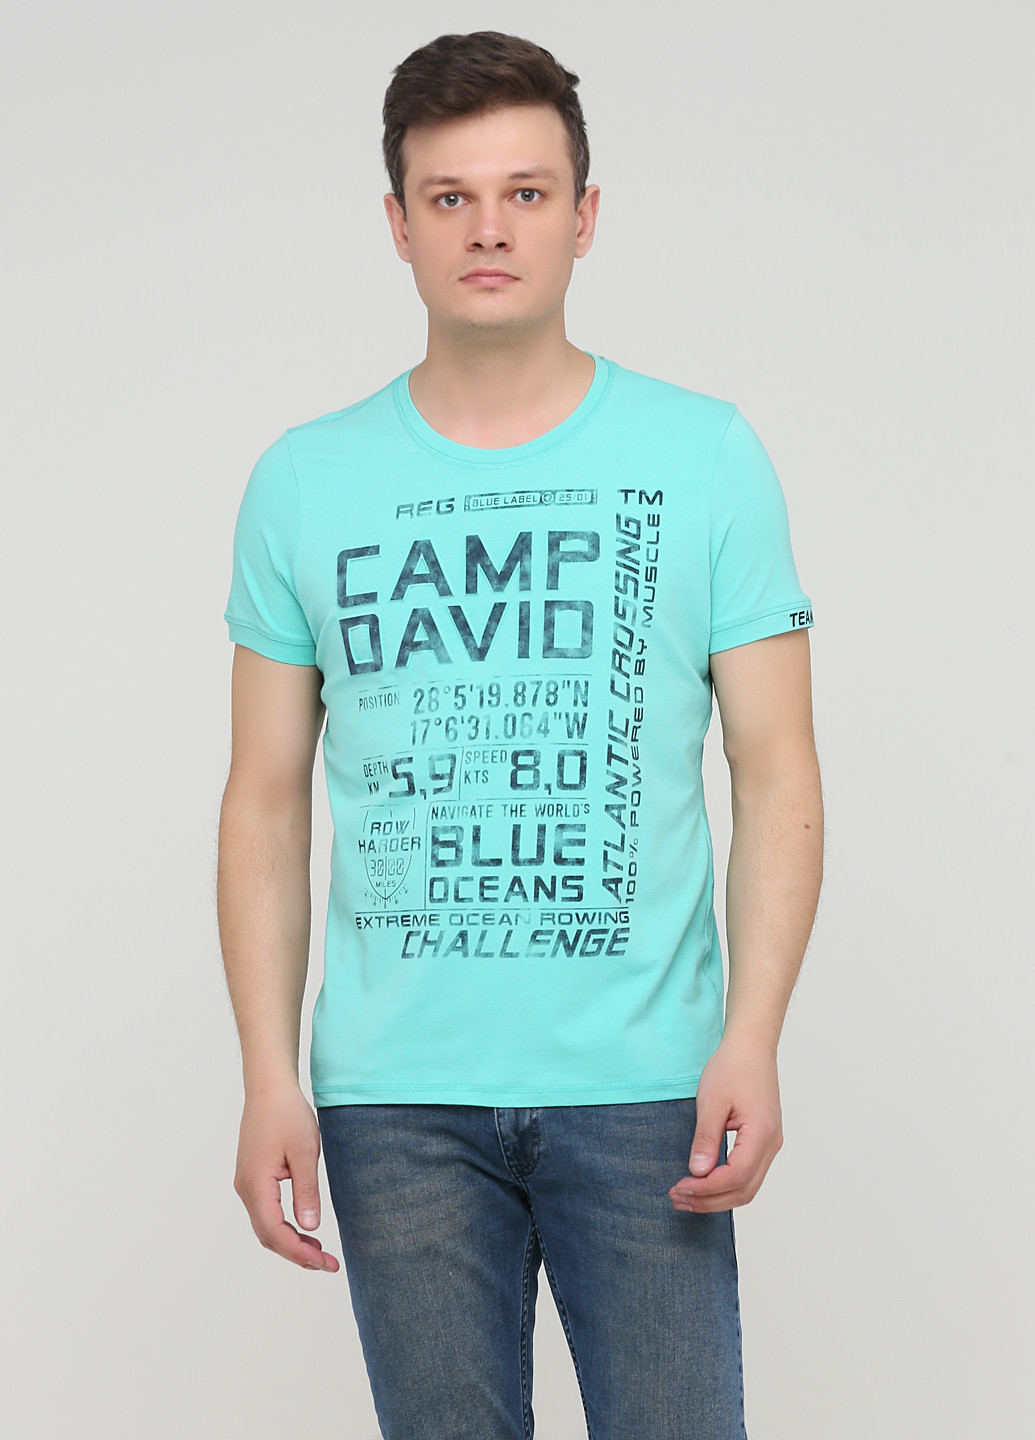 Світло-бірюзова футболка Camp David